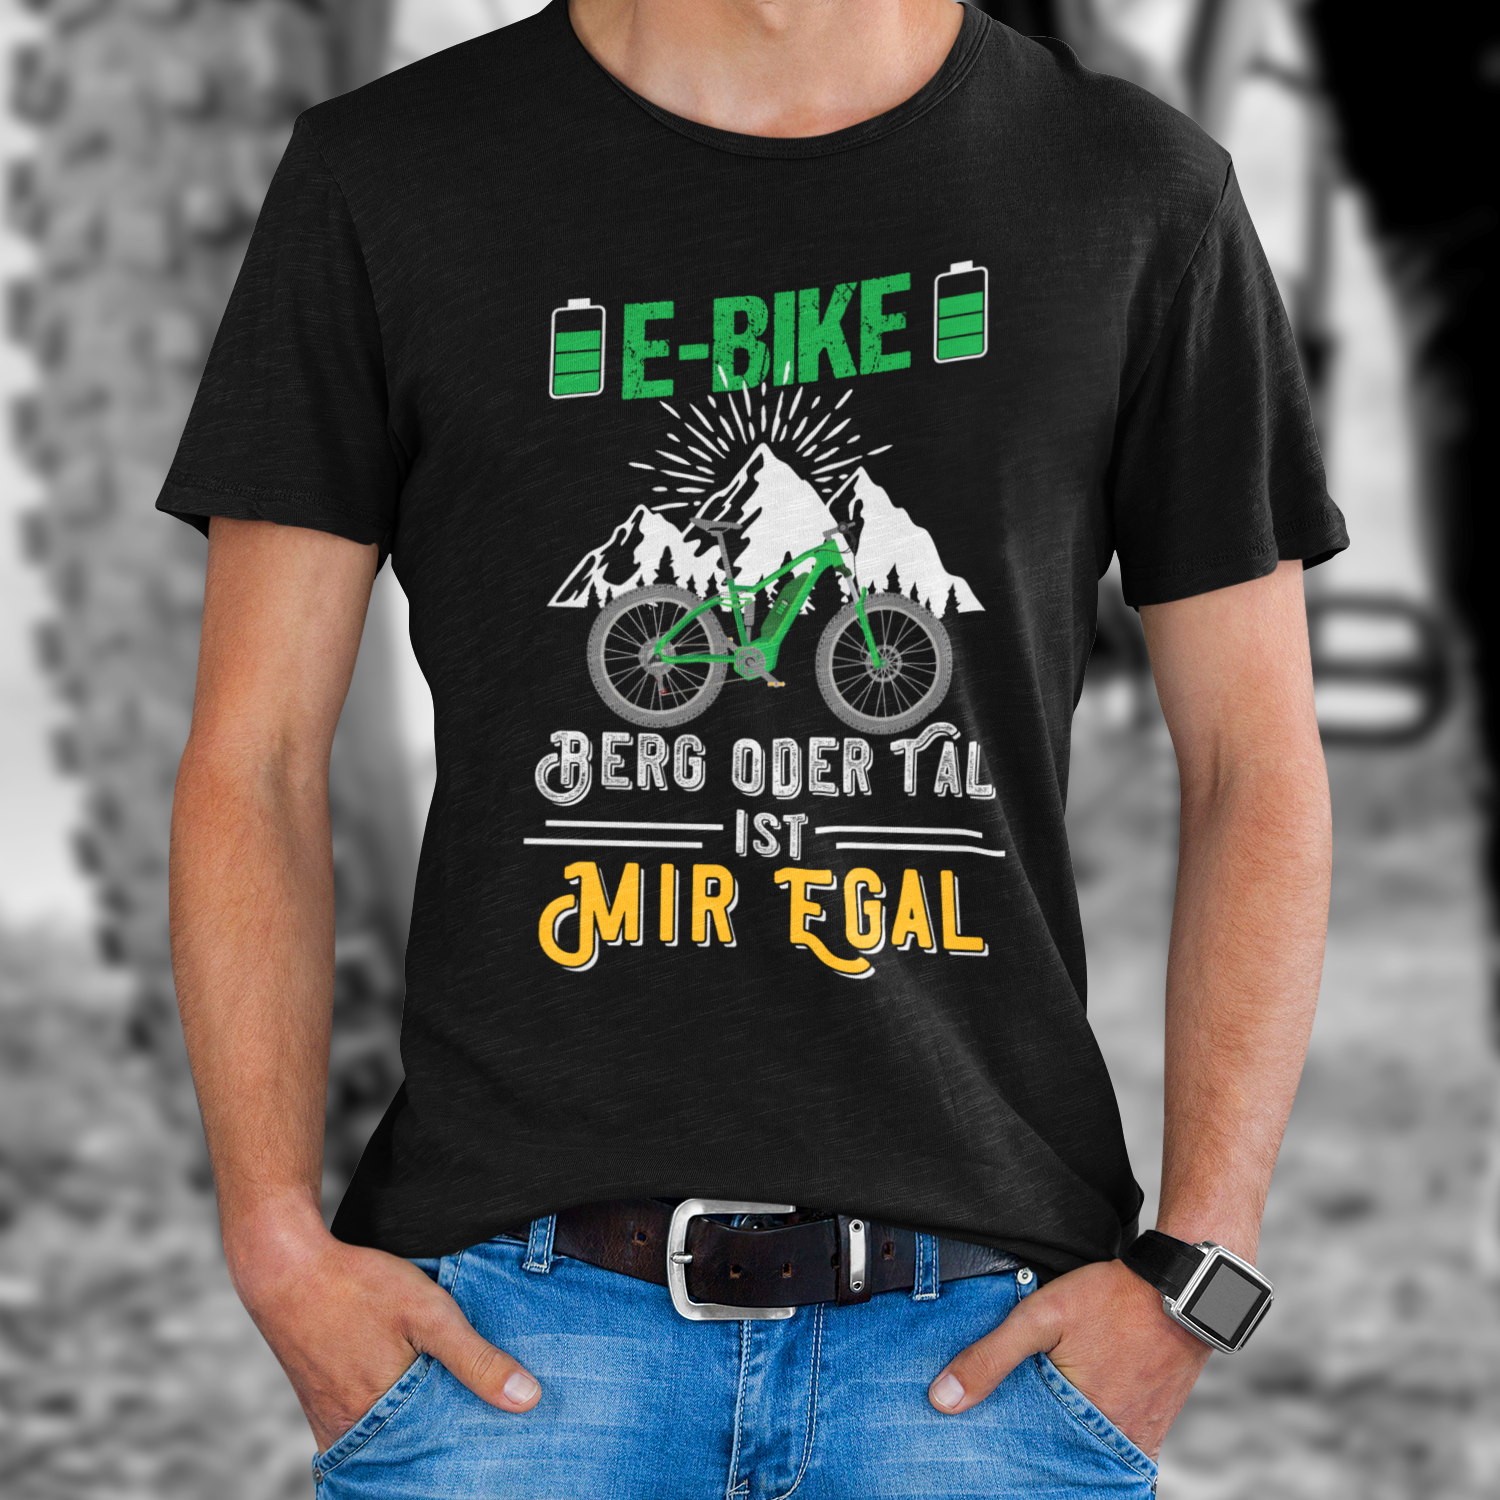 Biking & Cycling Shirts